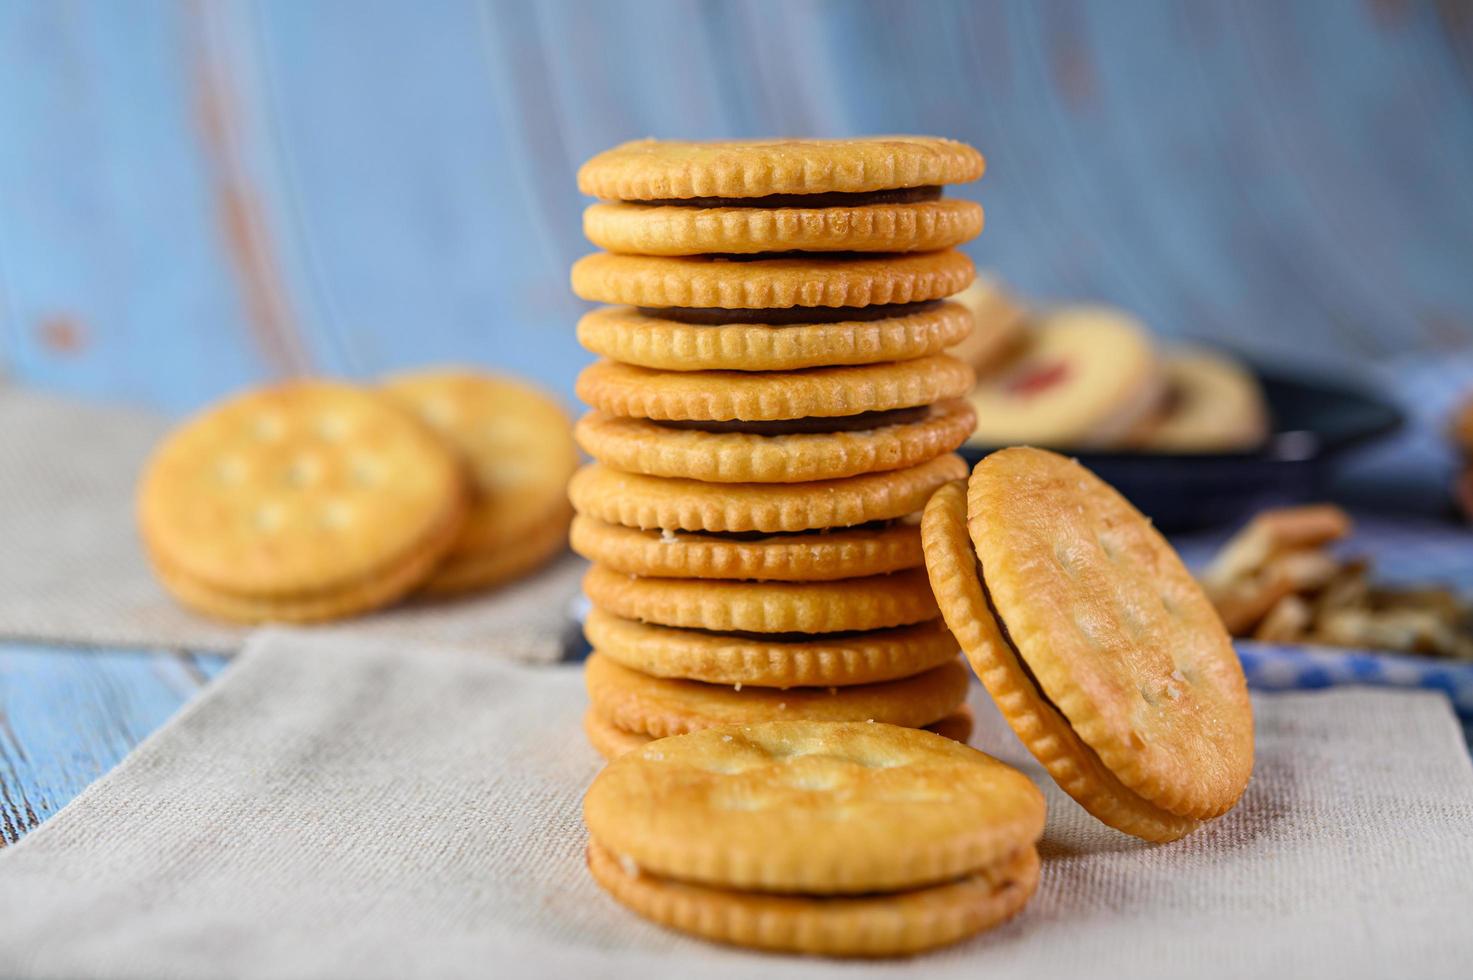 biscuits disposés sur un chiffon photo